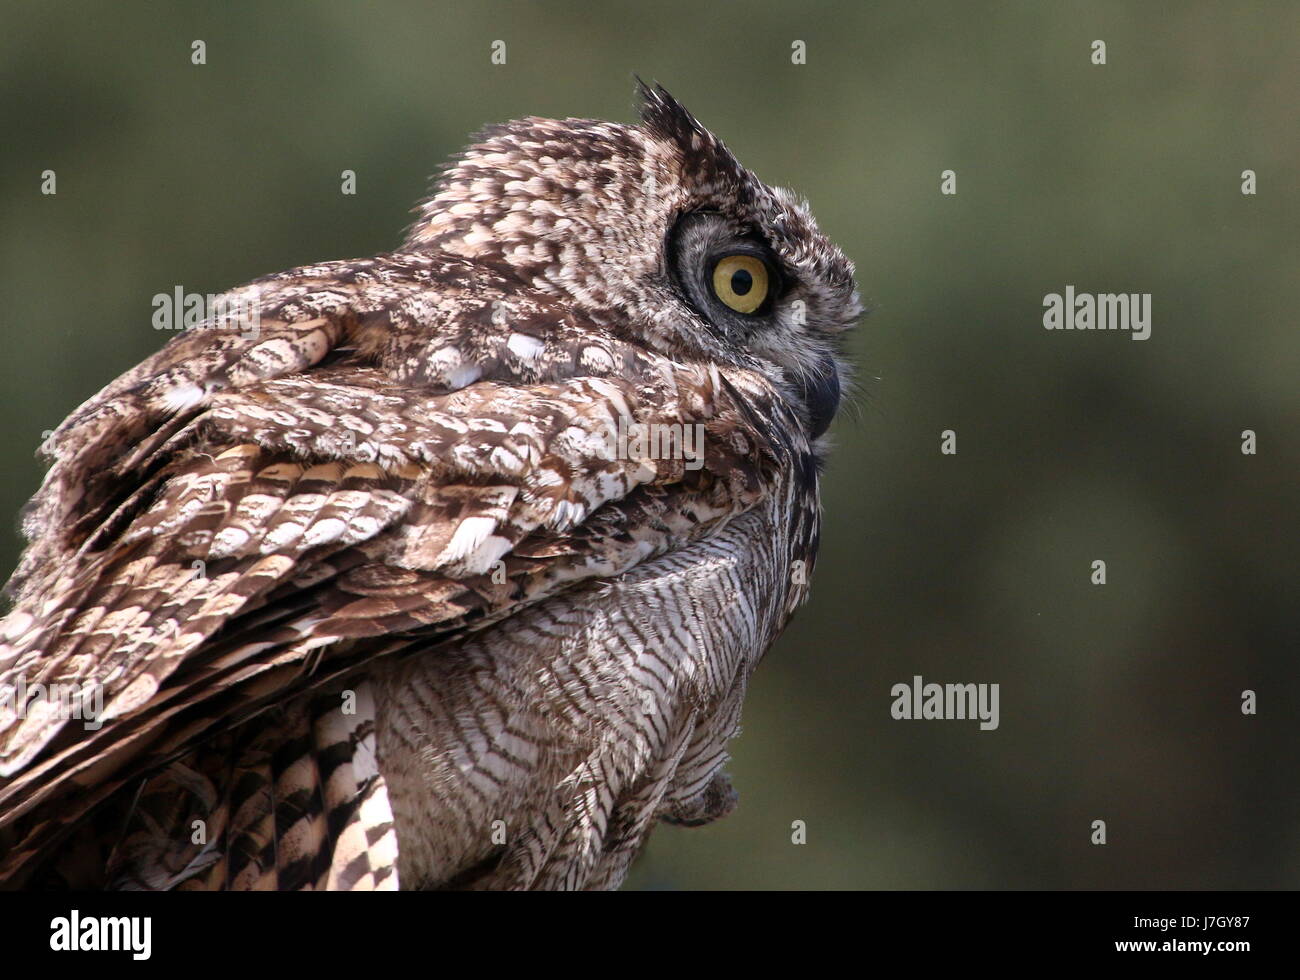 African Spotted Eagle Owl (Bubo africanus), haut du corps, vu de profil. Banque D'Images